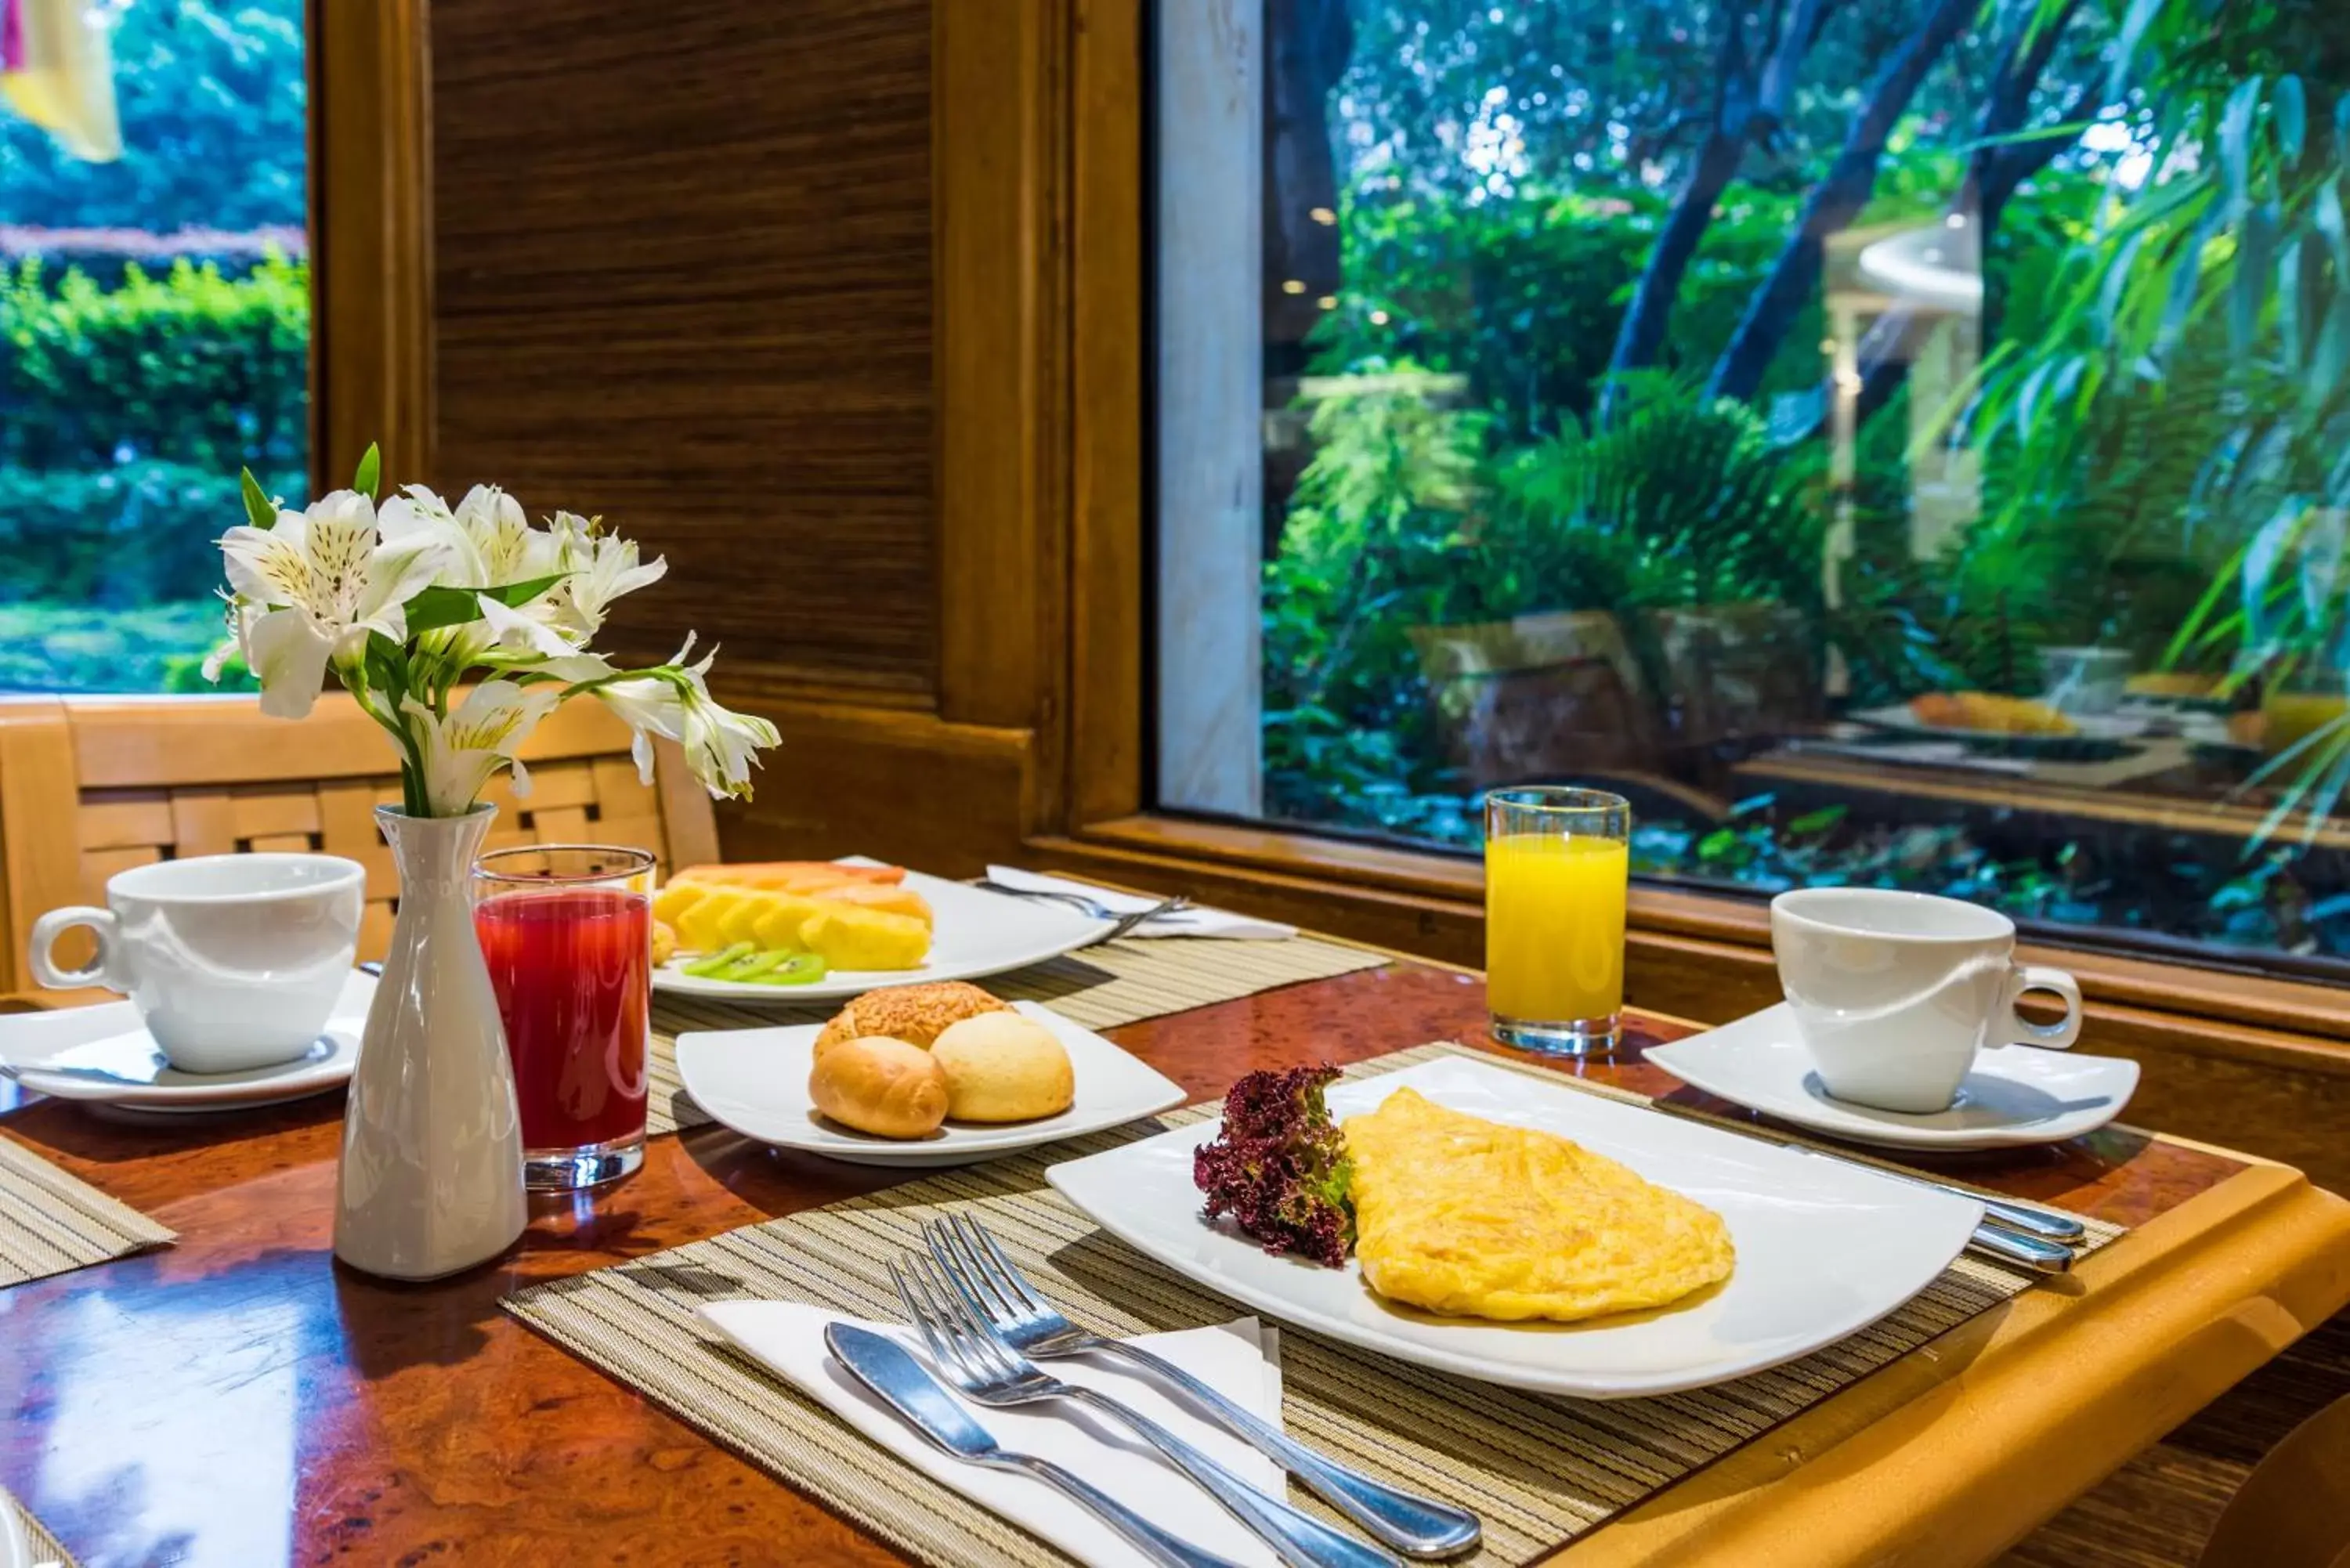 Food and drinks, Breakfast in Cosmos 100 Hotel & Centro de Convenciones - Hoteles Cosmos